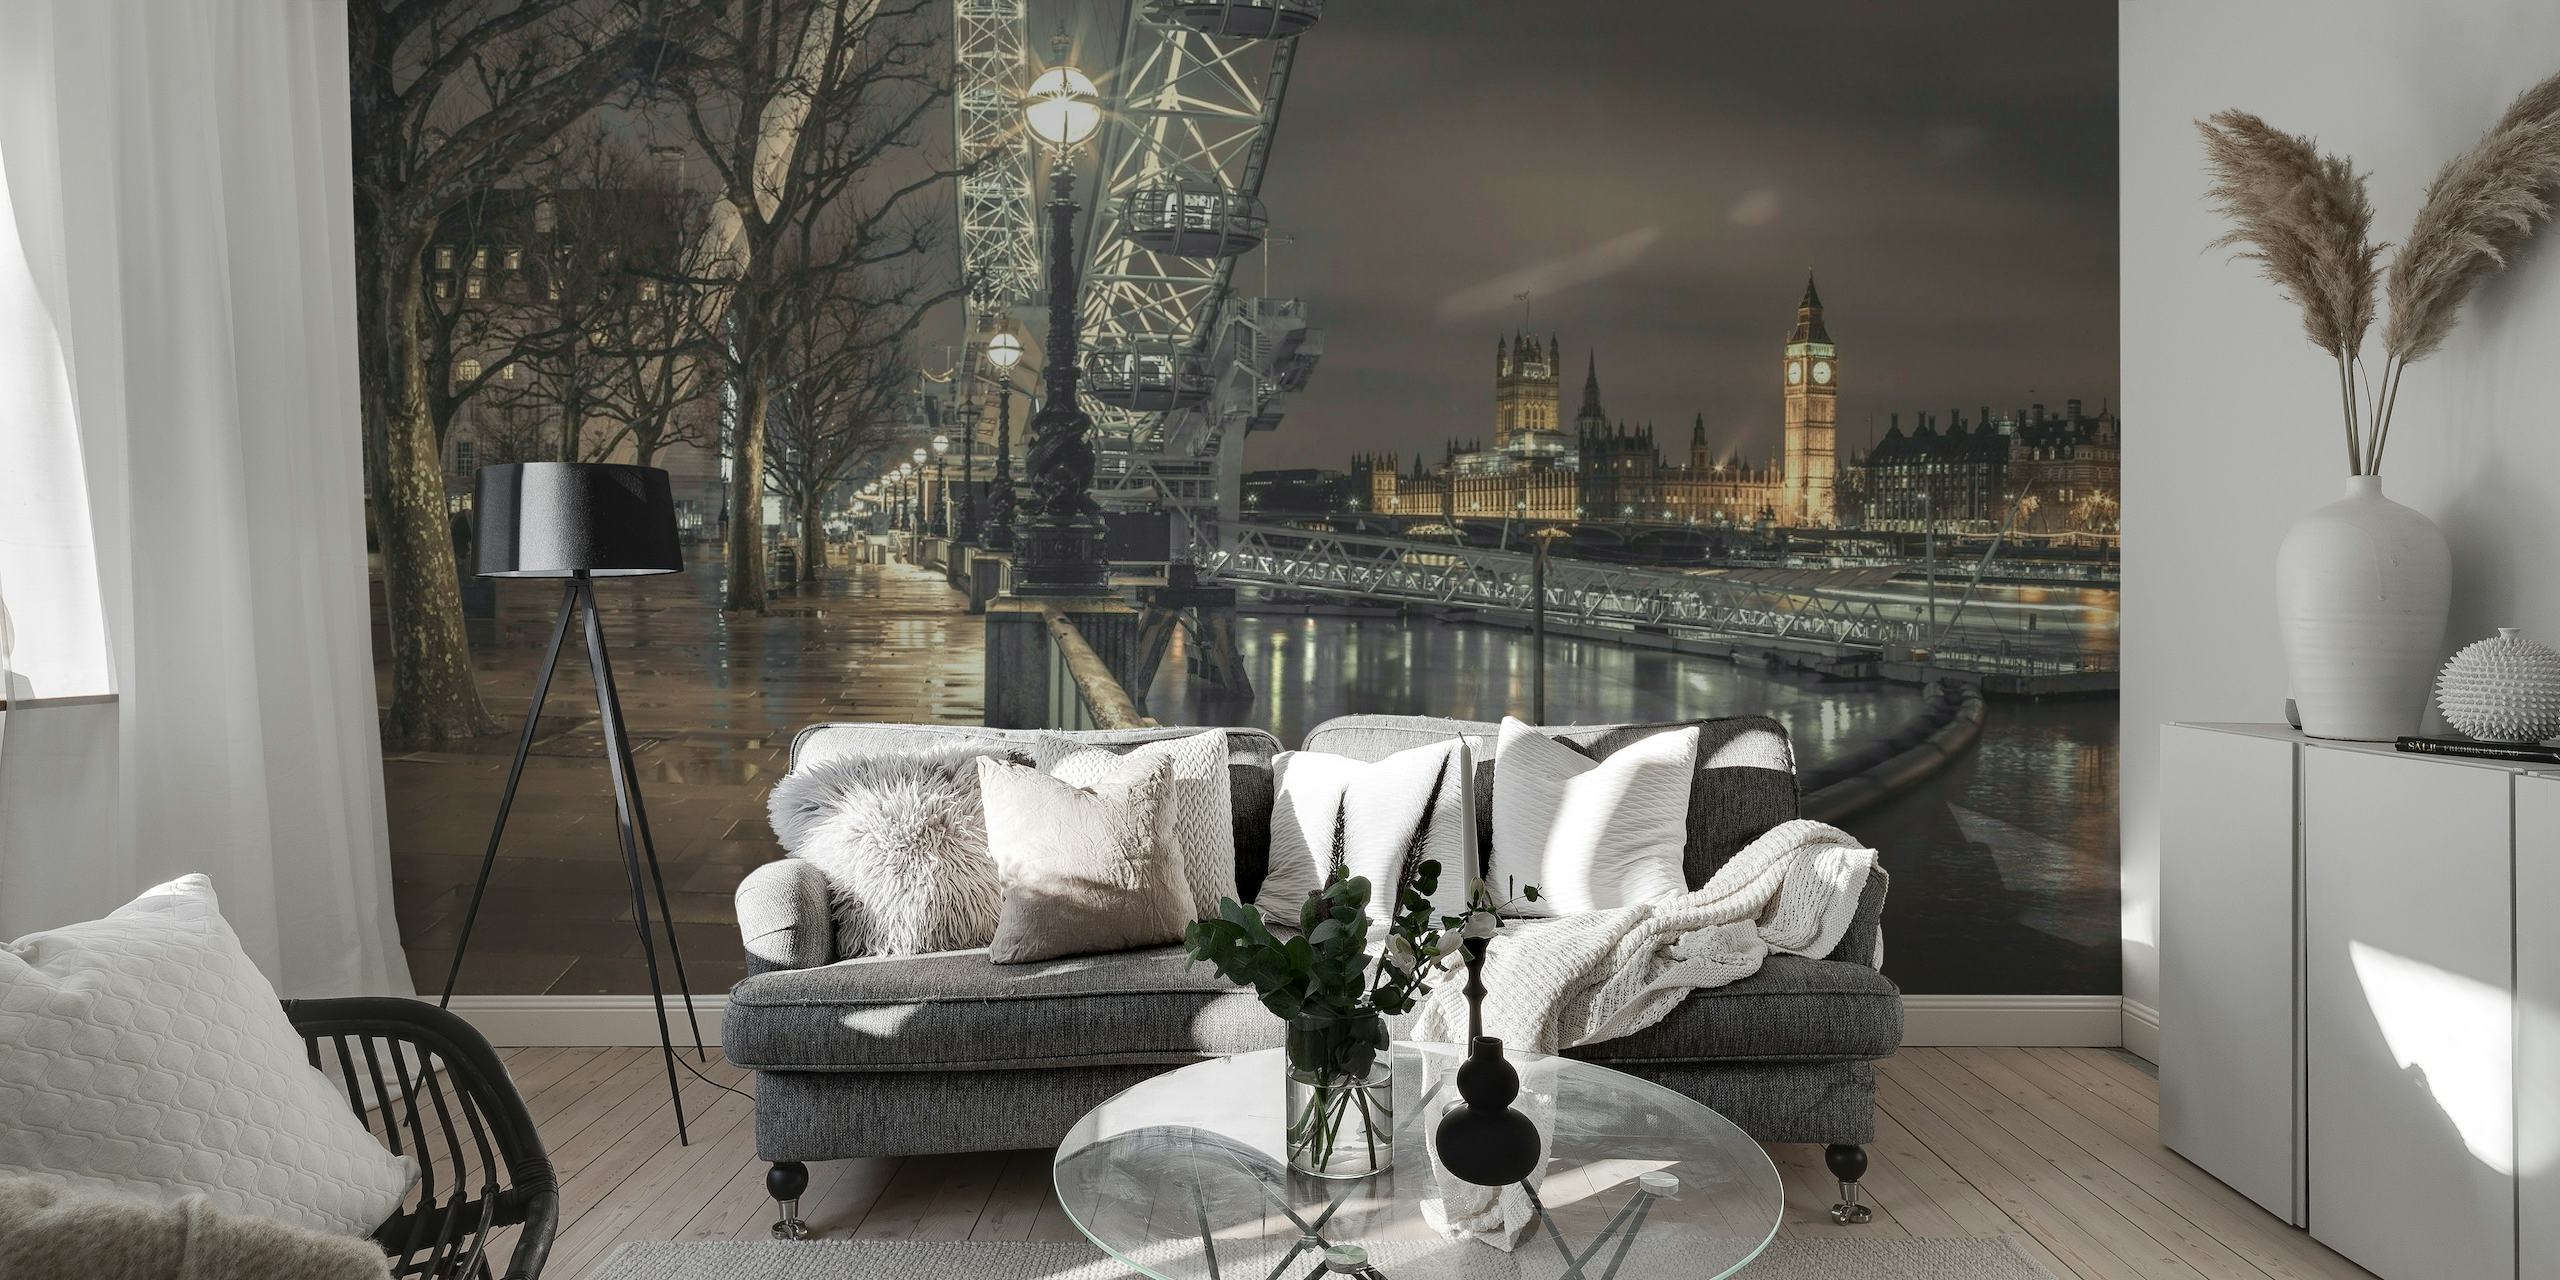 Fototapeta z panoramą Londynu przedstawiająca Tamizę i kultowe zabytki